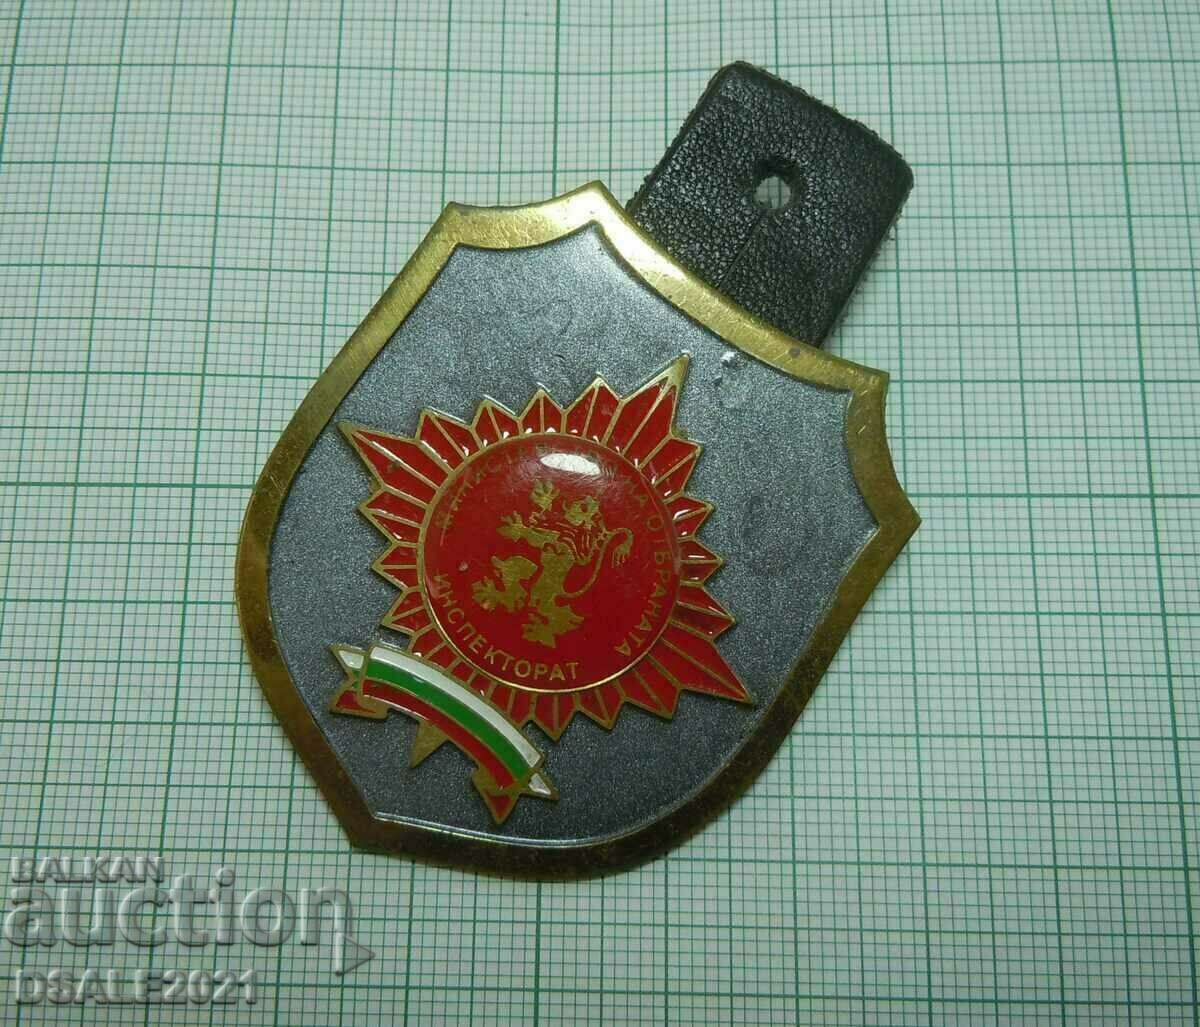 Σήμα στολή Επιθεώρησης Υπουργείου Άμυνας /kn33